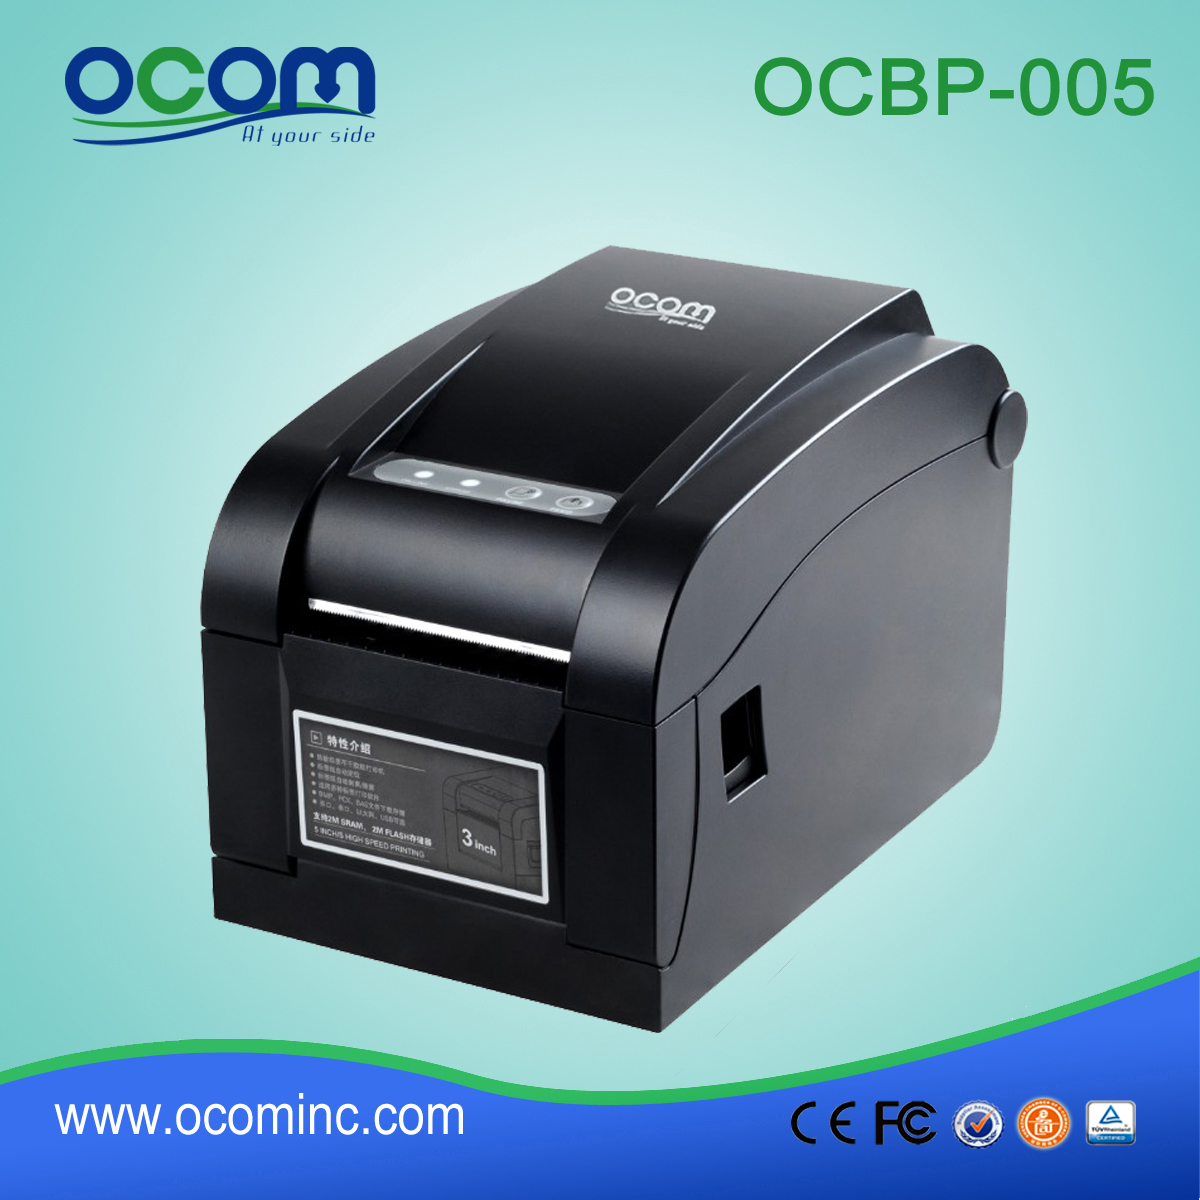 OCBP-005 16mm-17mm Width Paper Thermal Barcode Label Printer